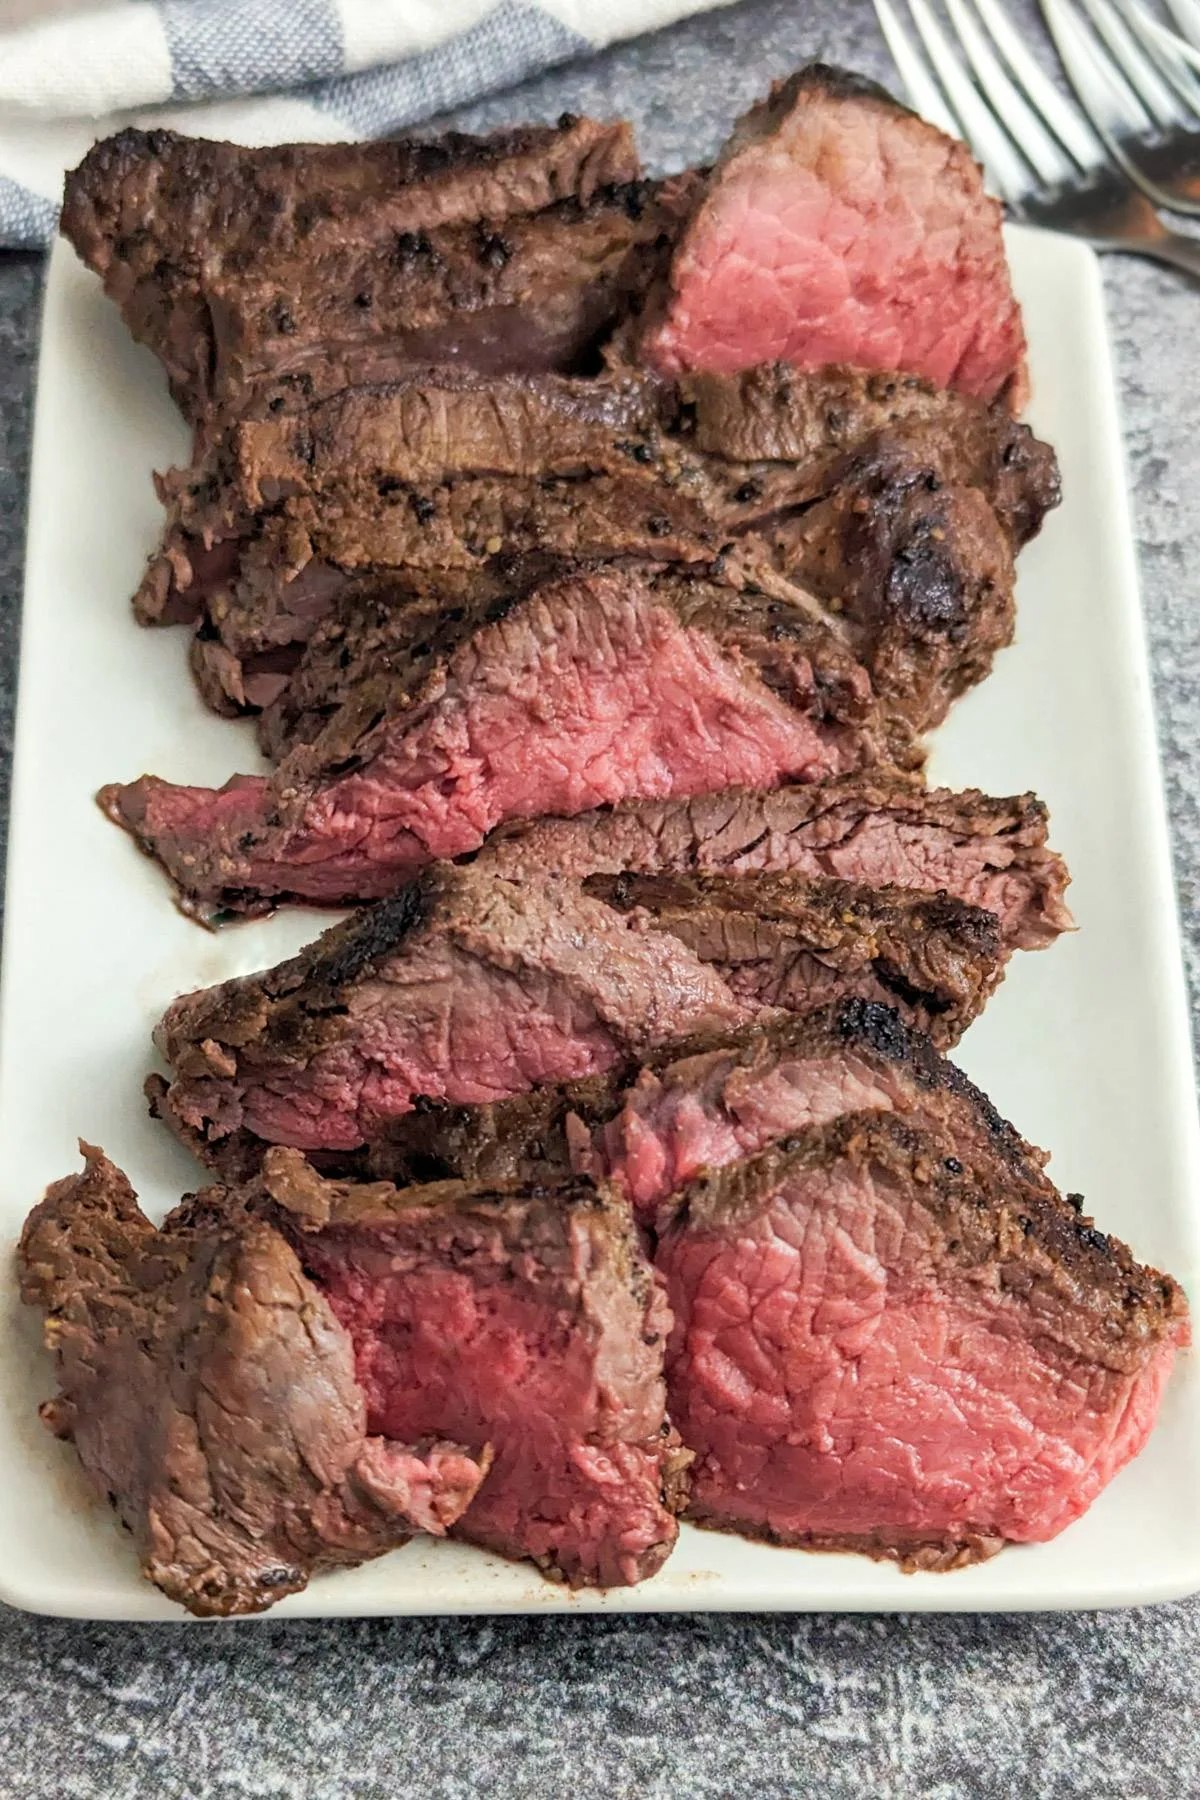 A sliced bison steak.